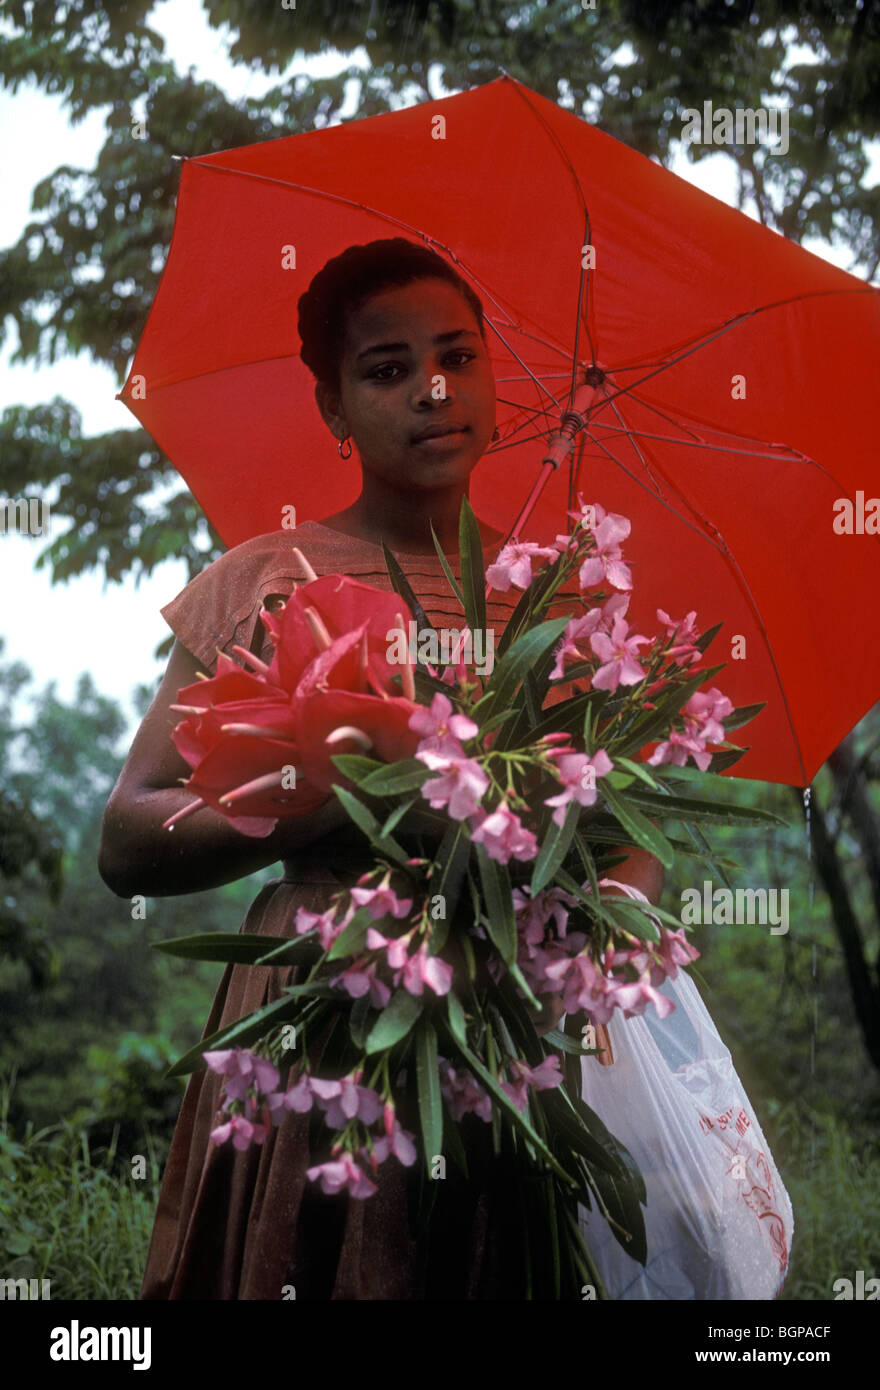 Martiniquais martiniquais, femme, femme, tenant un bouquet de fleurs, parapluie rouge, le Marin, Martinique, Antilles françaises Banque D'Images